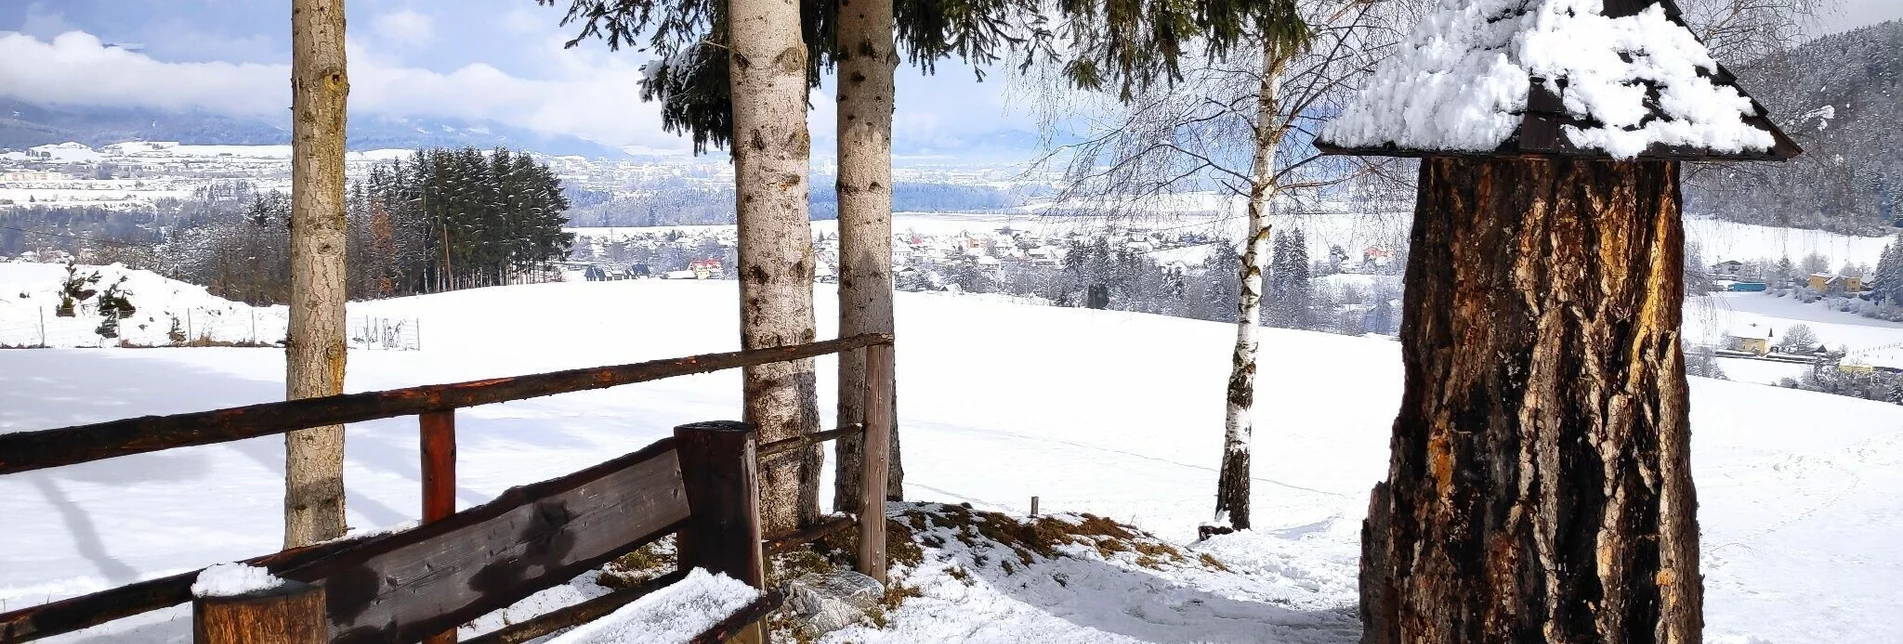 Winterwandern Winterwanderung auf dem  Waldrundweg in Lobming - Touren-Impression #1 | © WEGES OG